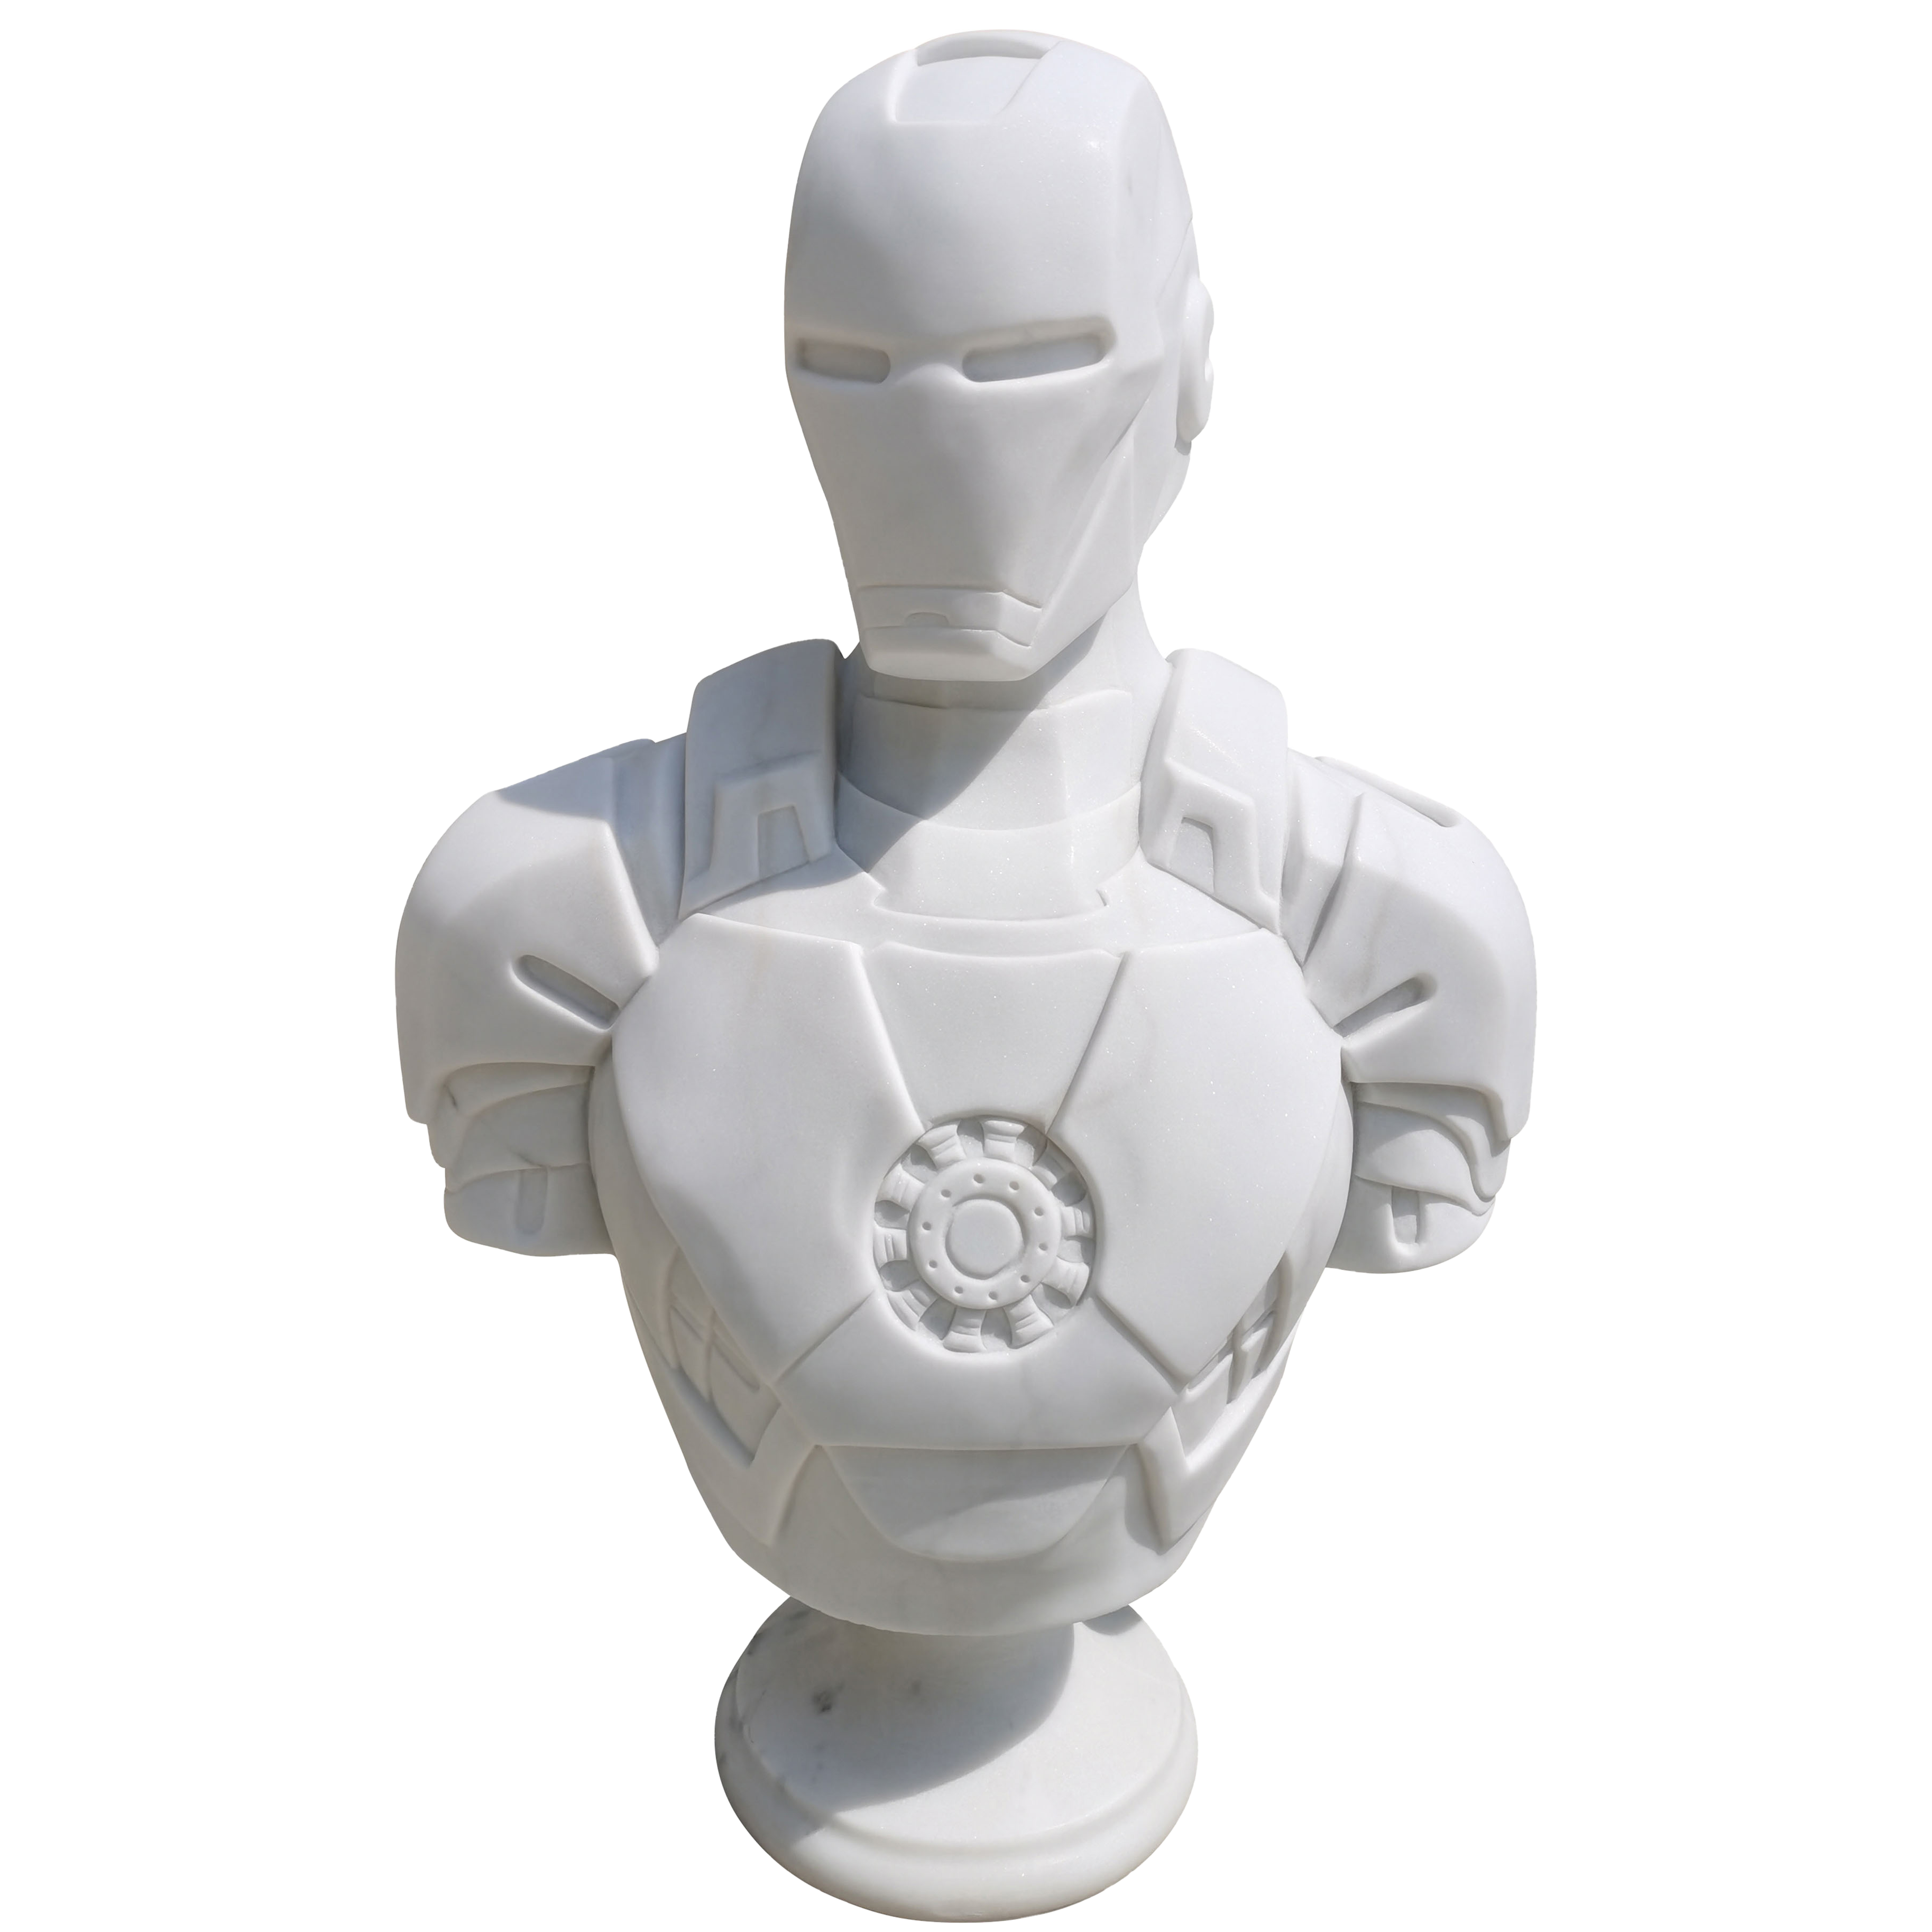 Cette image est une sculpture de l'artiste Léo Caillard, intitulée "The Stone Iron Man". Cette pièce de 90 cm, réalisée en marbre blanc représente un buste en armure du héros Marvel, Iron Man avec son casque. Vous pouvez retrouver cette pièce à la Galerie Montmartre à Paris, France.